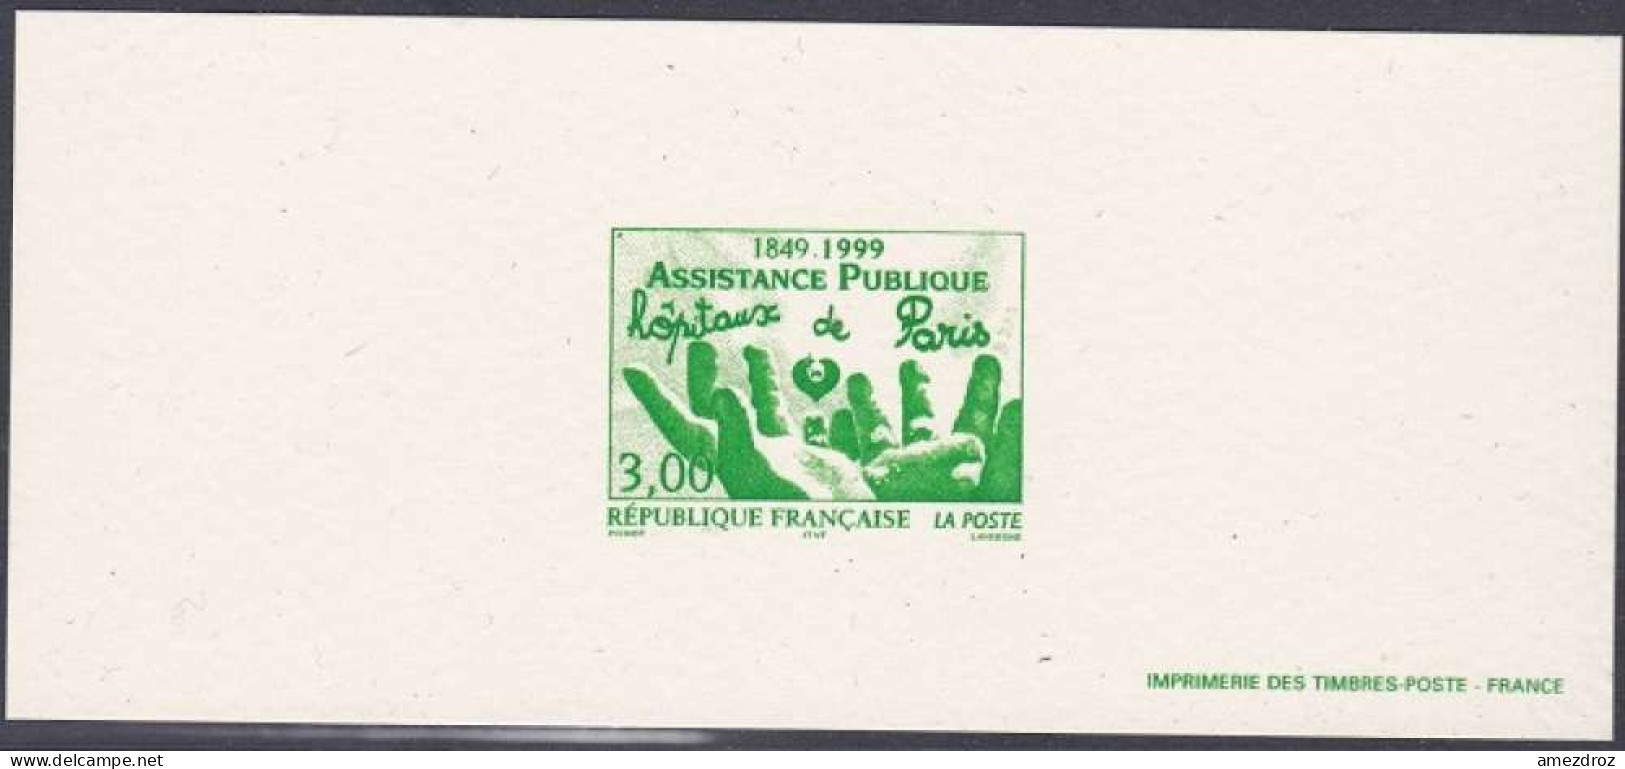 France Gravure Officielle Assistance Publique - Hôpitaux De Paris (3) - Documents Of Postal Services